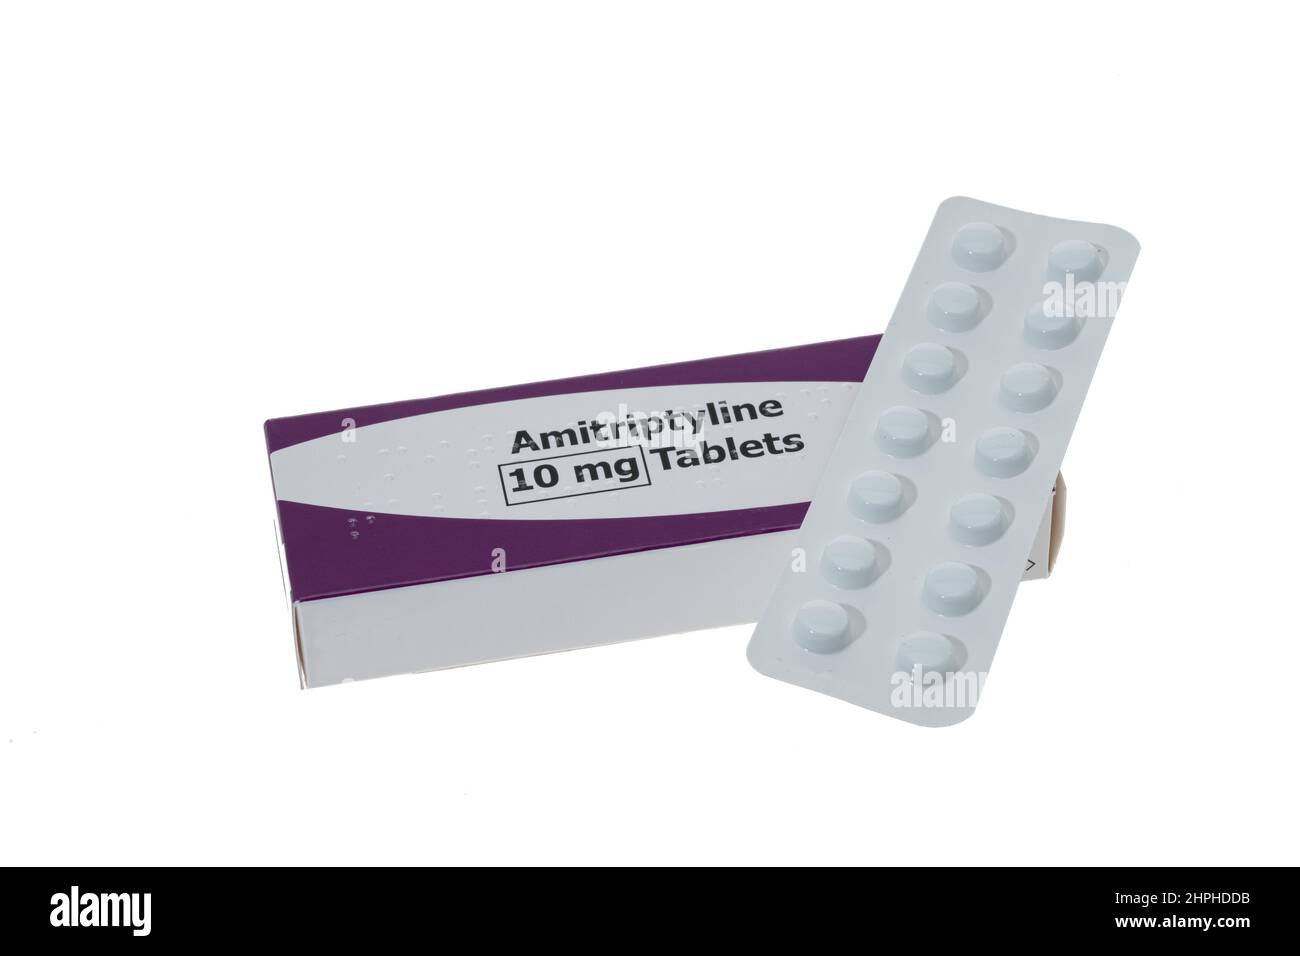 Genérico Amitriptyline Hydrochloride Pills que se utilizan para tratar los síntomas de la depresión y también el alivio del dolor - fondo blanco Foto de stock